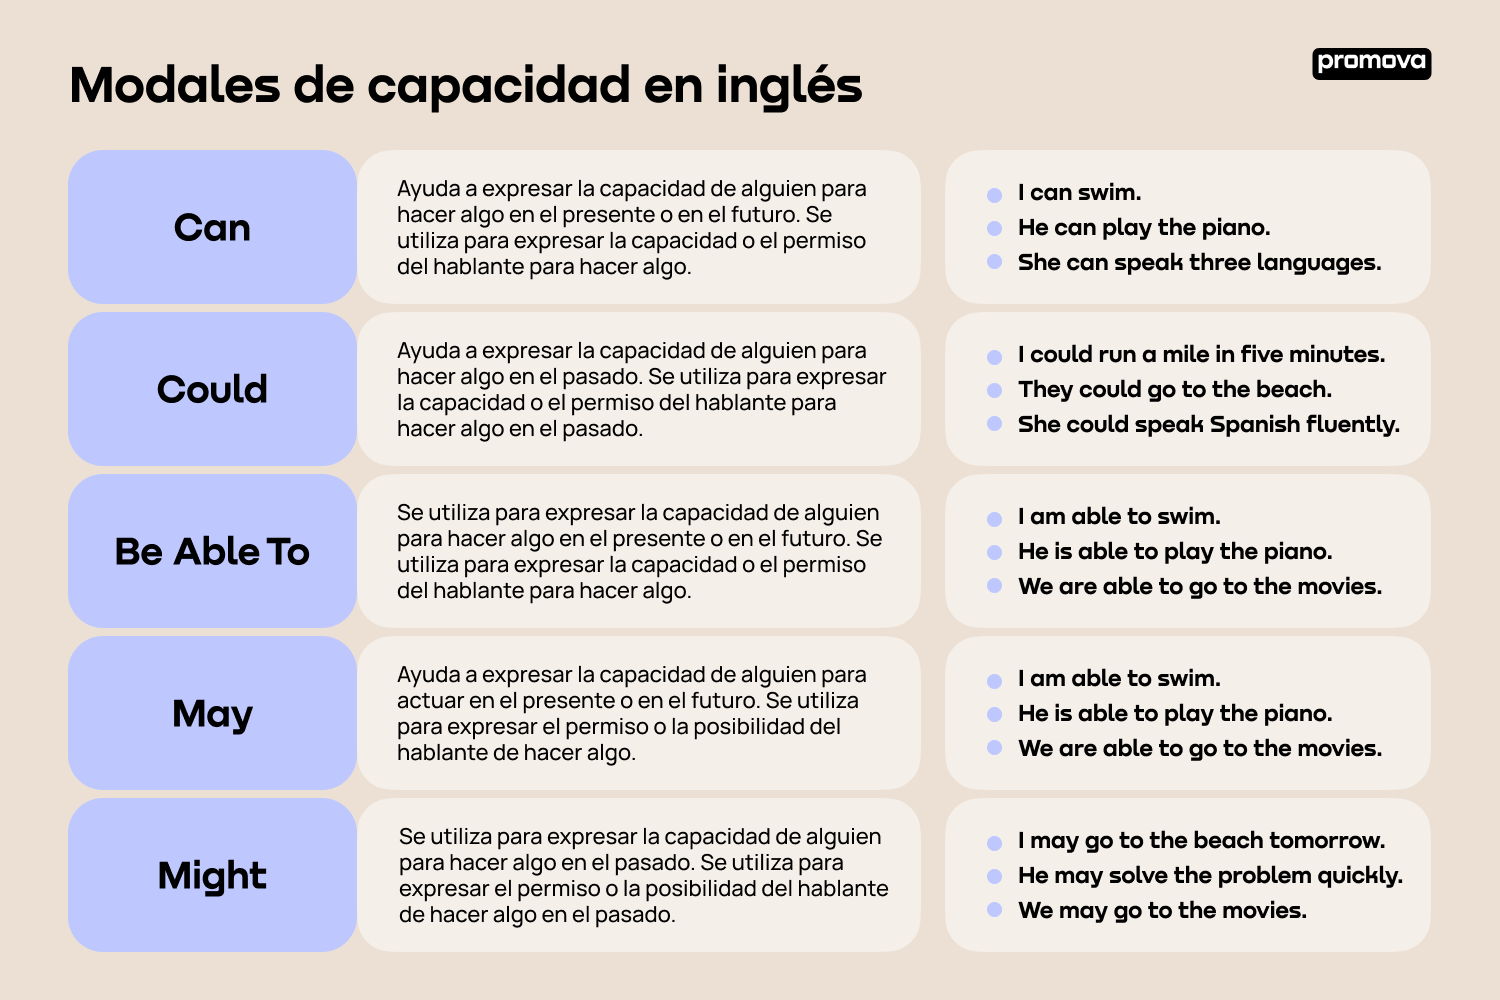 Aprende sobre los modales de capacidad en inglés: Ejemplos y usos